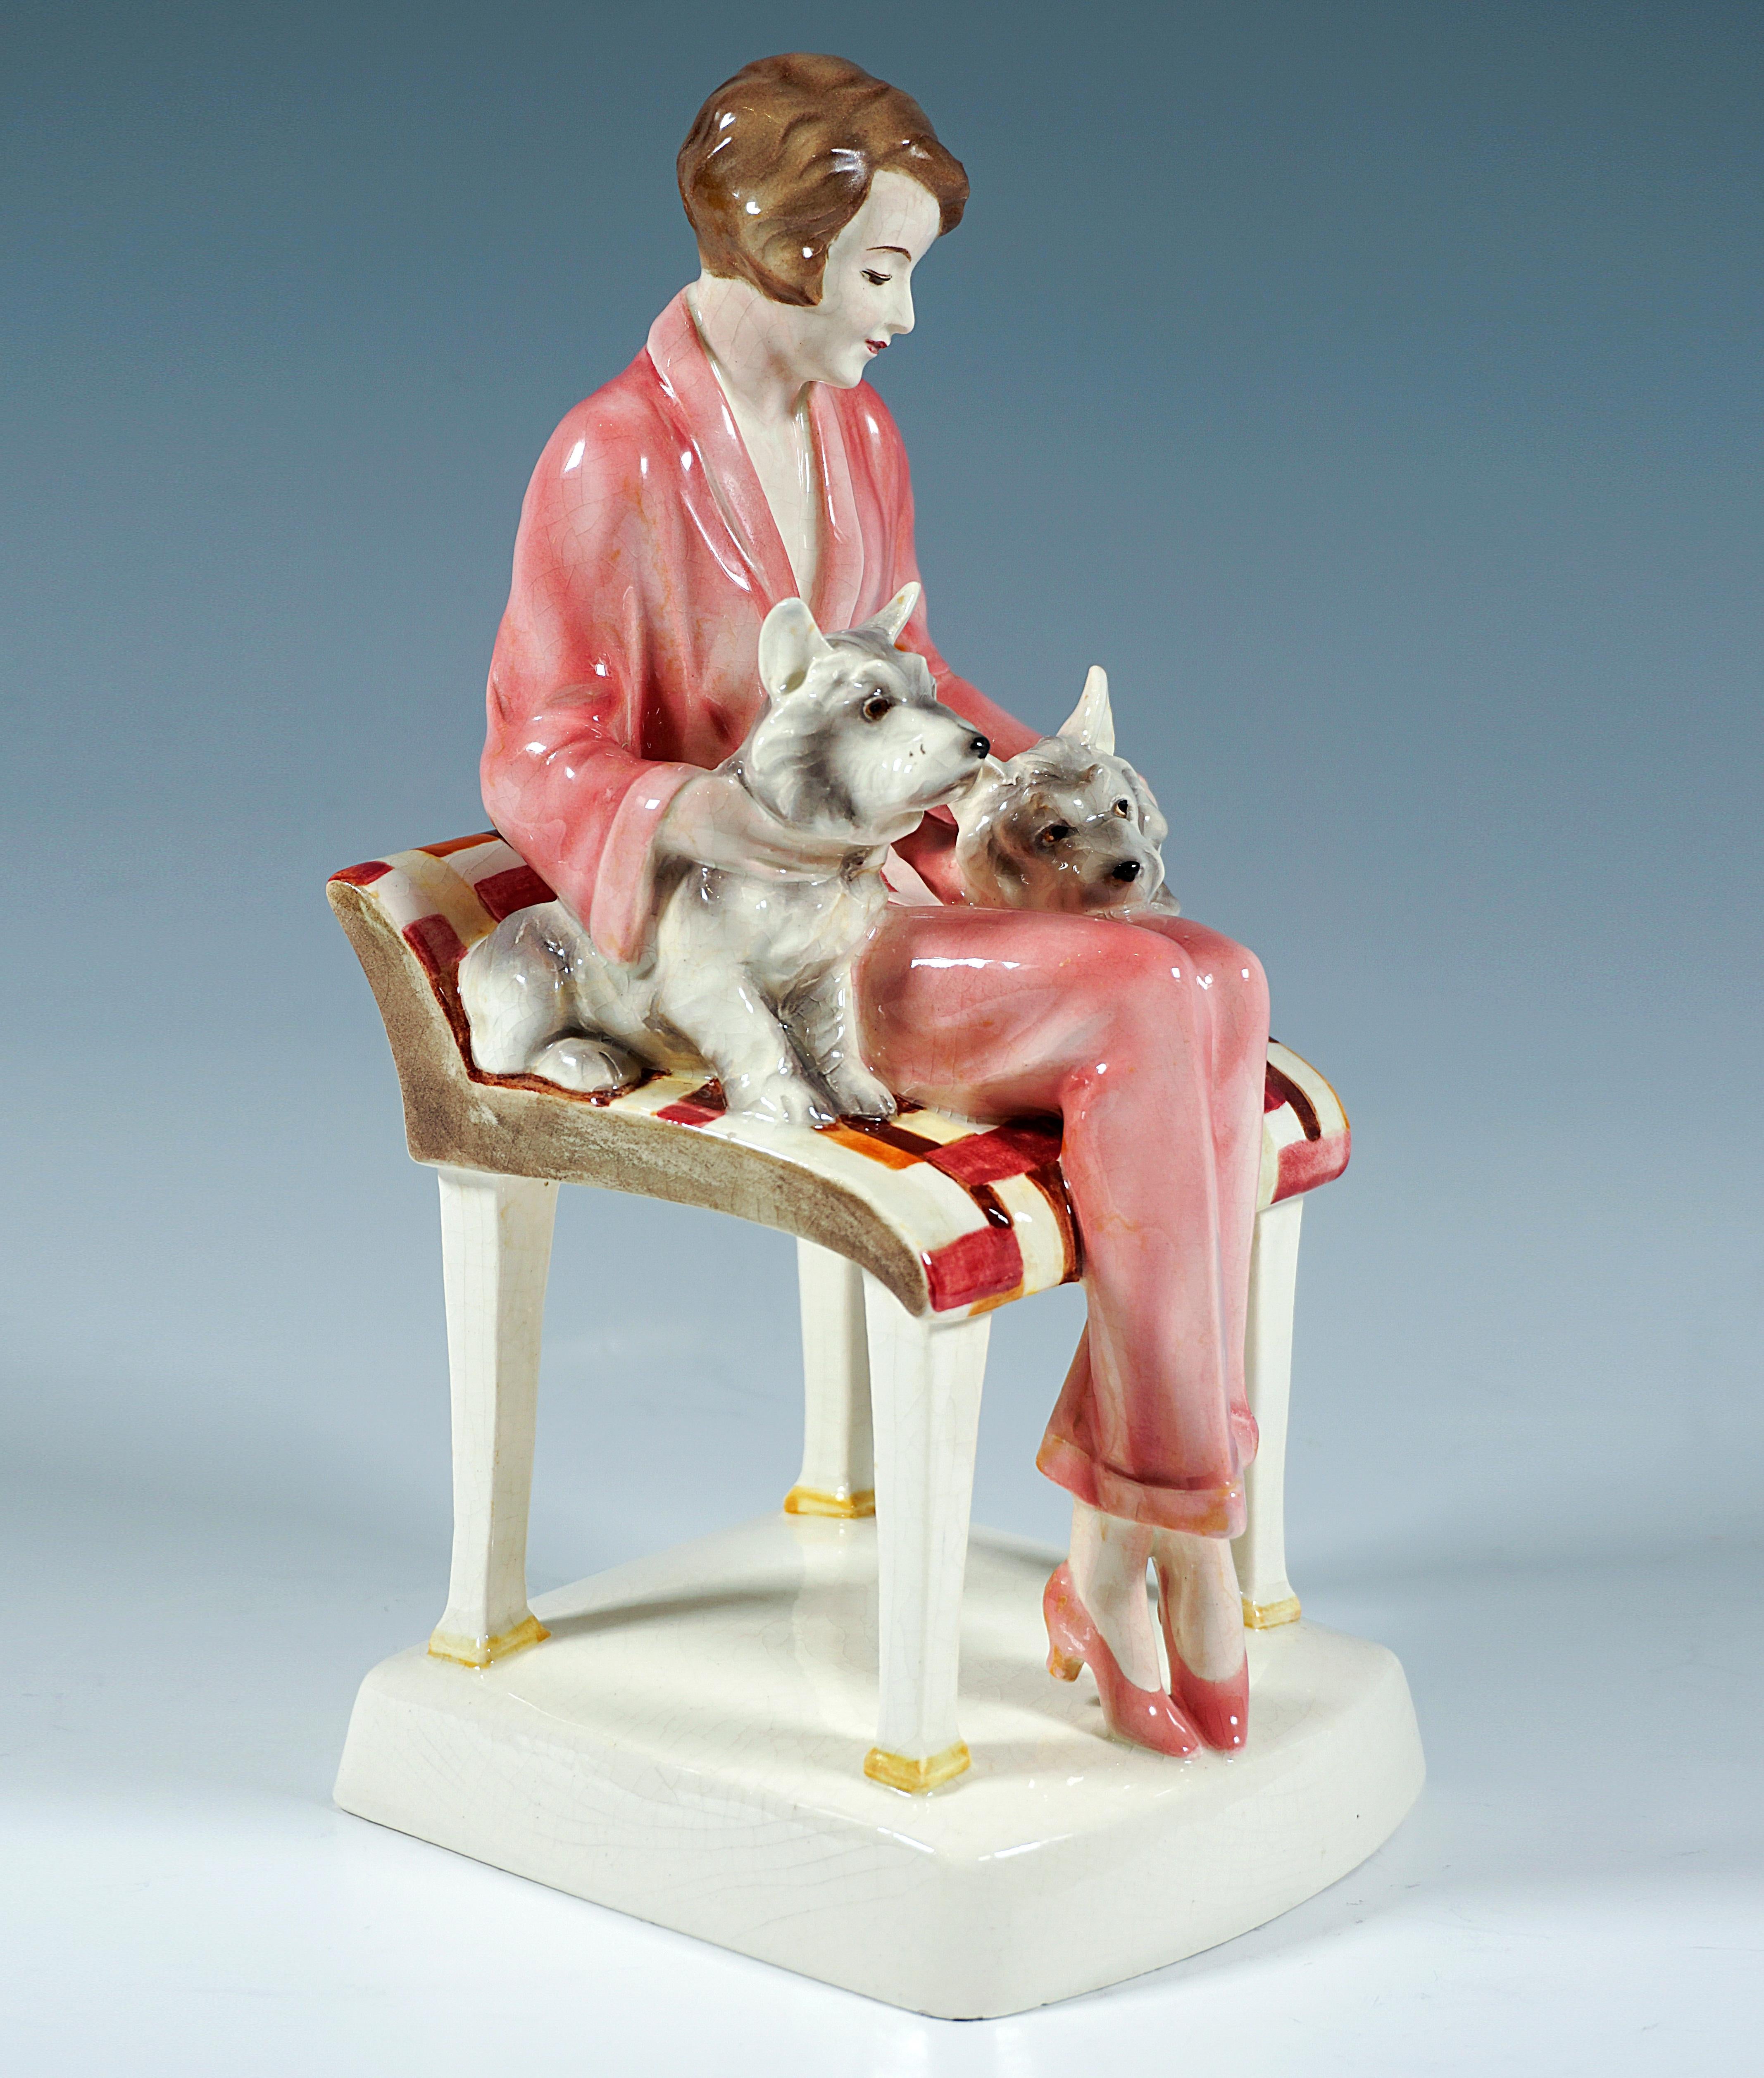 Excellent groupe de figurines Goldscheider des années 1930 :
Jeune femme en tailleur pantalon rosé, cheveux courts bruns, assise sur un grand tabouret à dossier bas, embrassant des deux mains deux chiens terriers qui se blottissent sur ses jambes